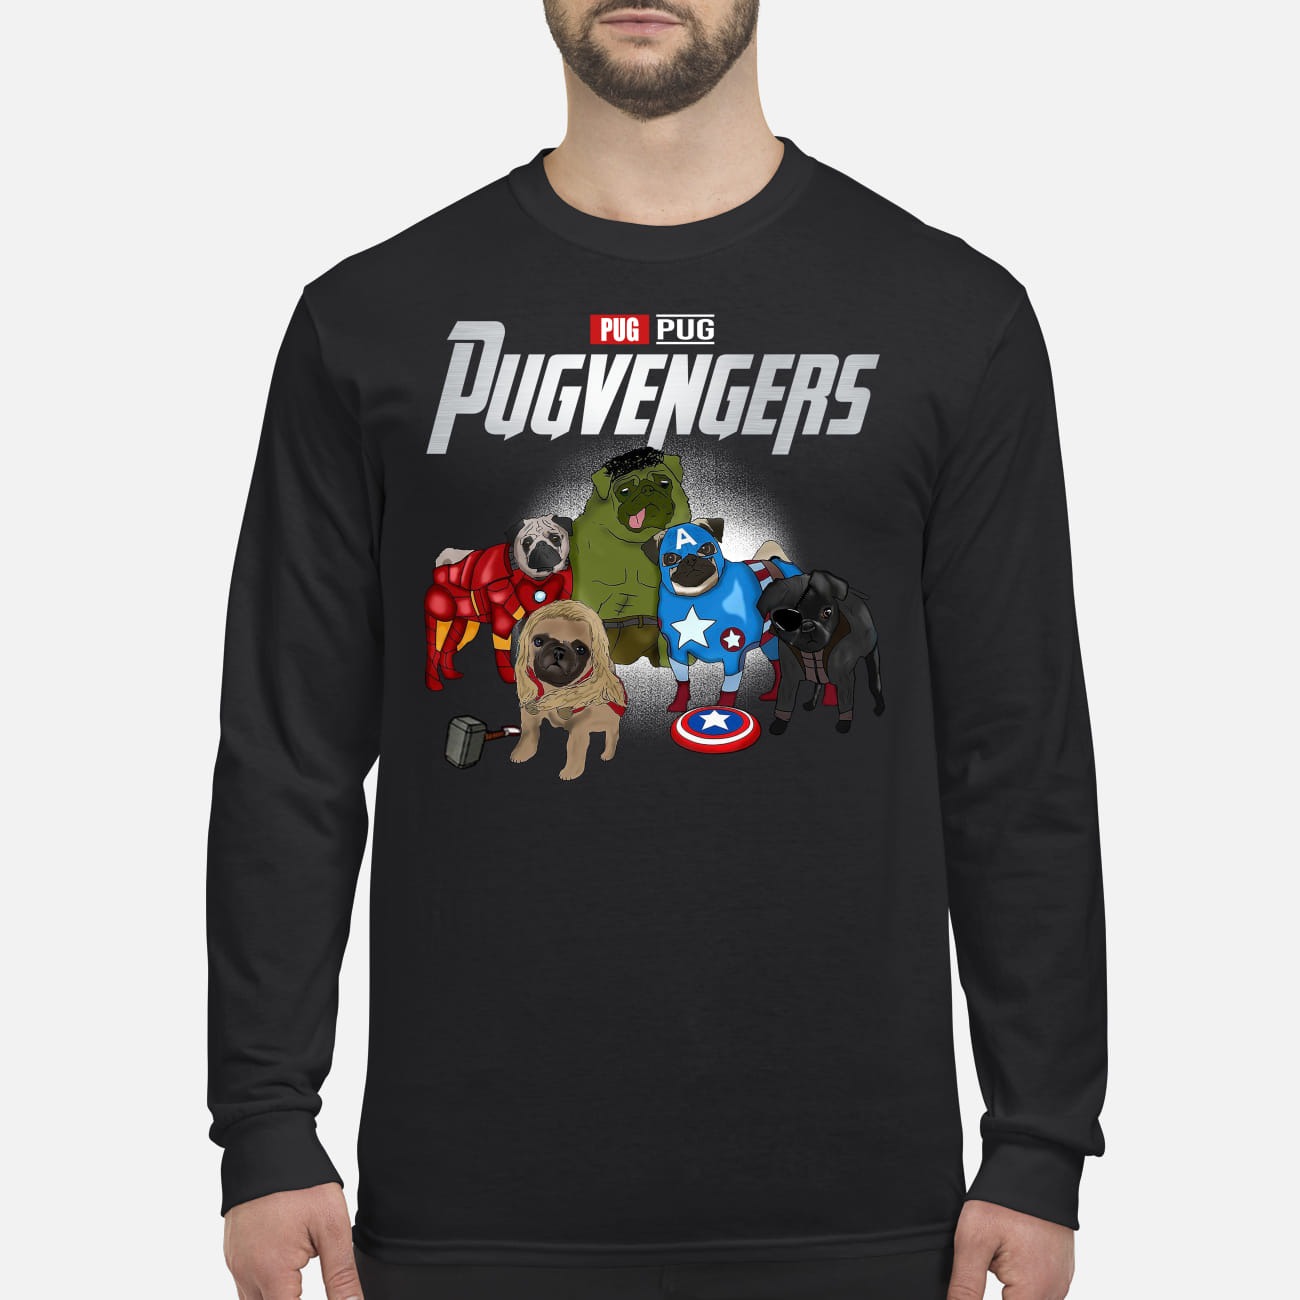 Pug avengers pugvengers men's long sleeved shirt